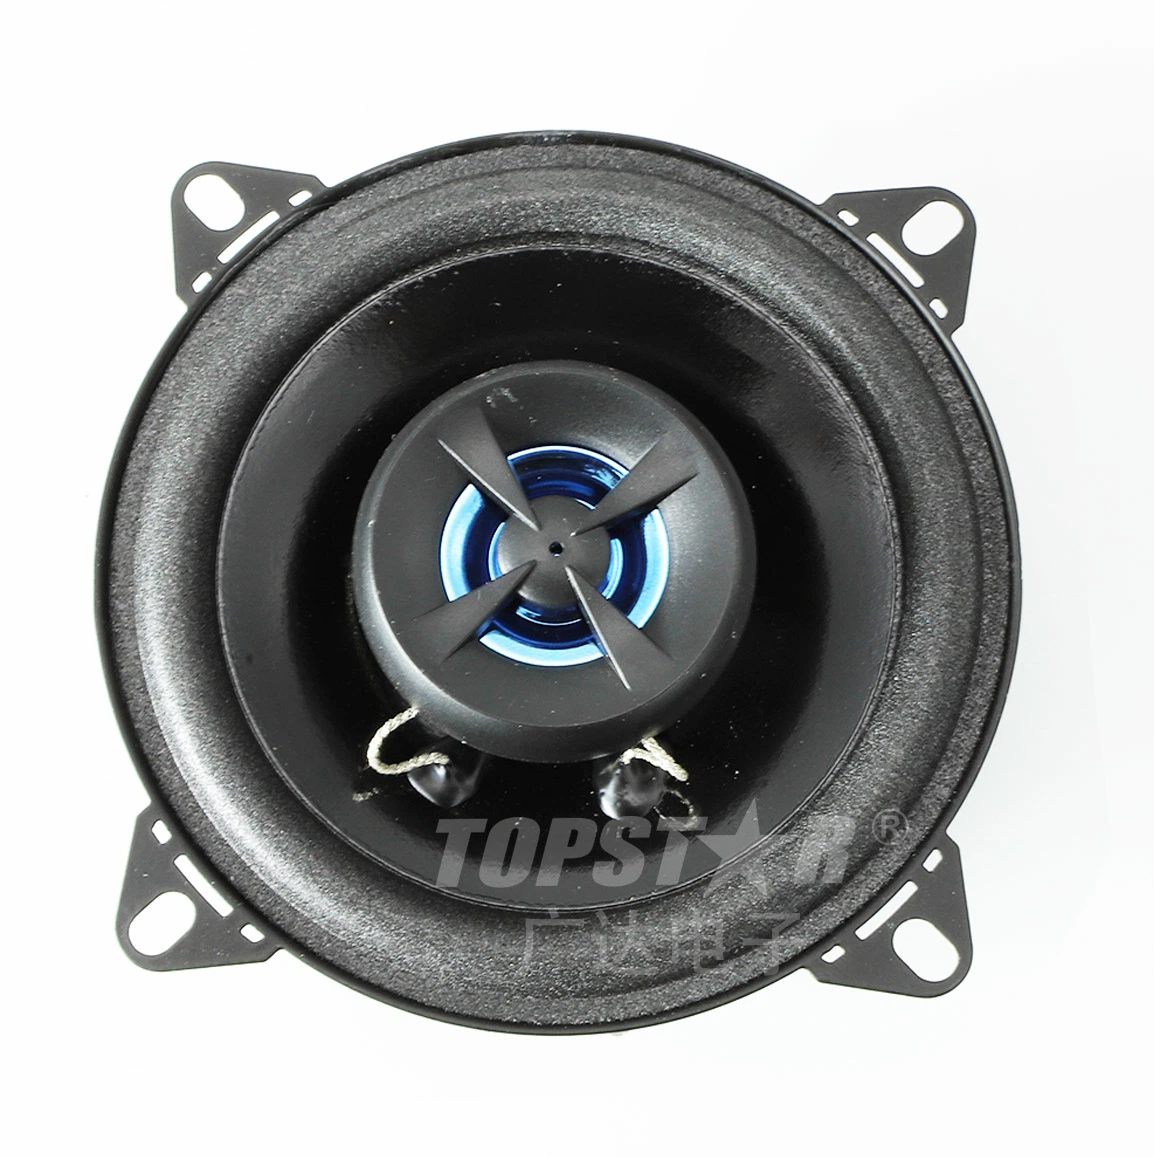 Accessoire de haut-parleur stéréo pour voiture Professional Audio Haut-parleur pour voiture voiture Mini haut-parleur audio